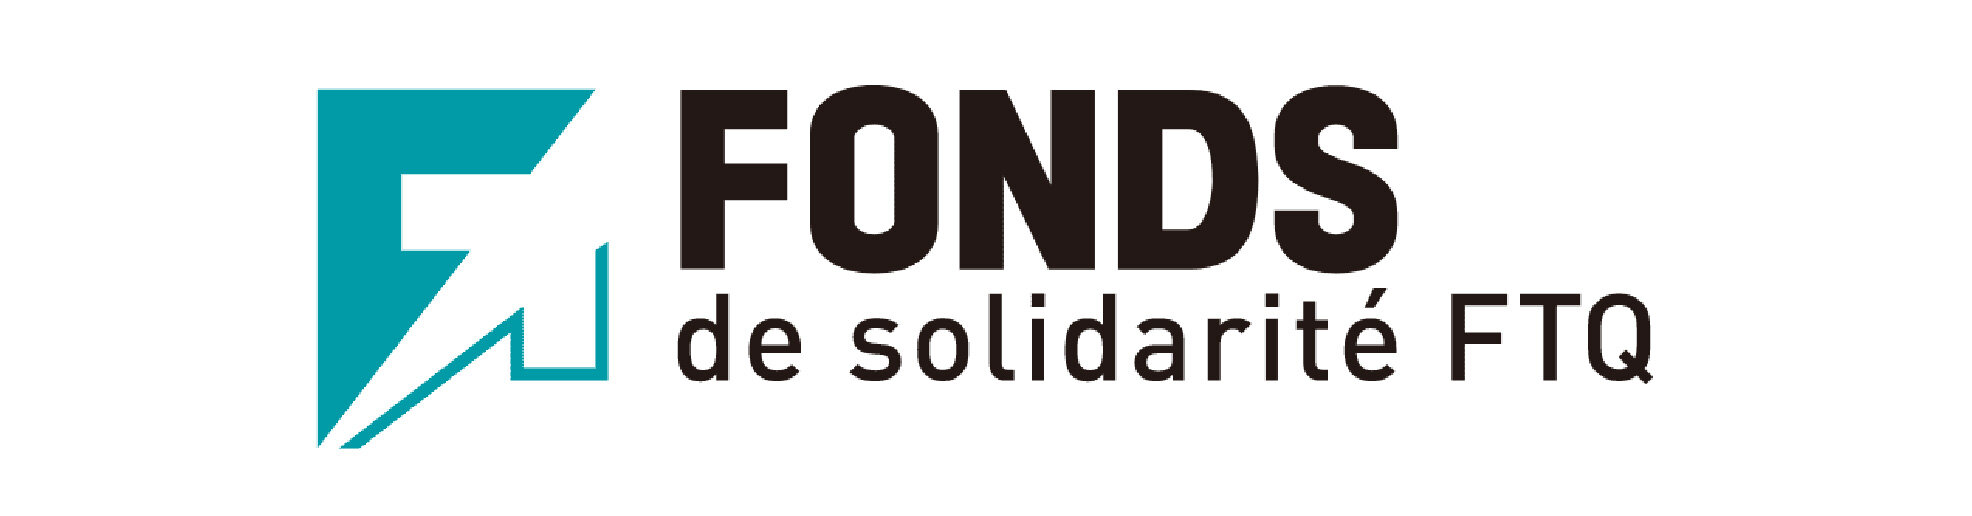 The Fonds de solidarité FTQ (Copy)